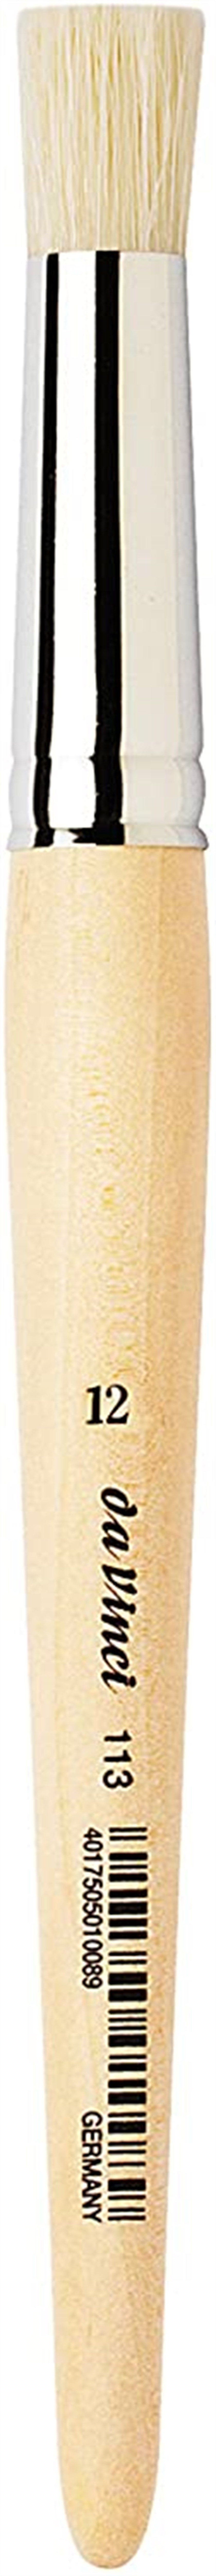  Da Vinci Domuz Kılı Yuvarlak Silindir Uçlu Stencil Şablon Fırçası Seri 113 No:12